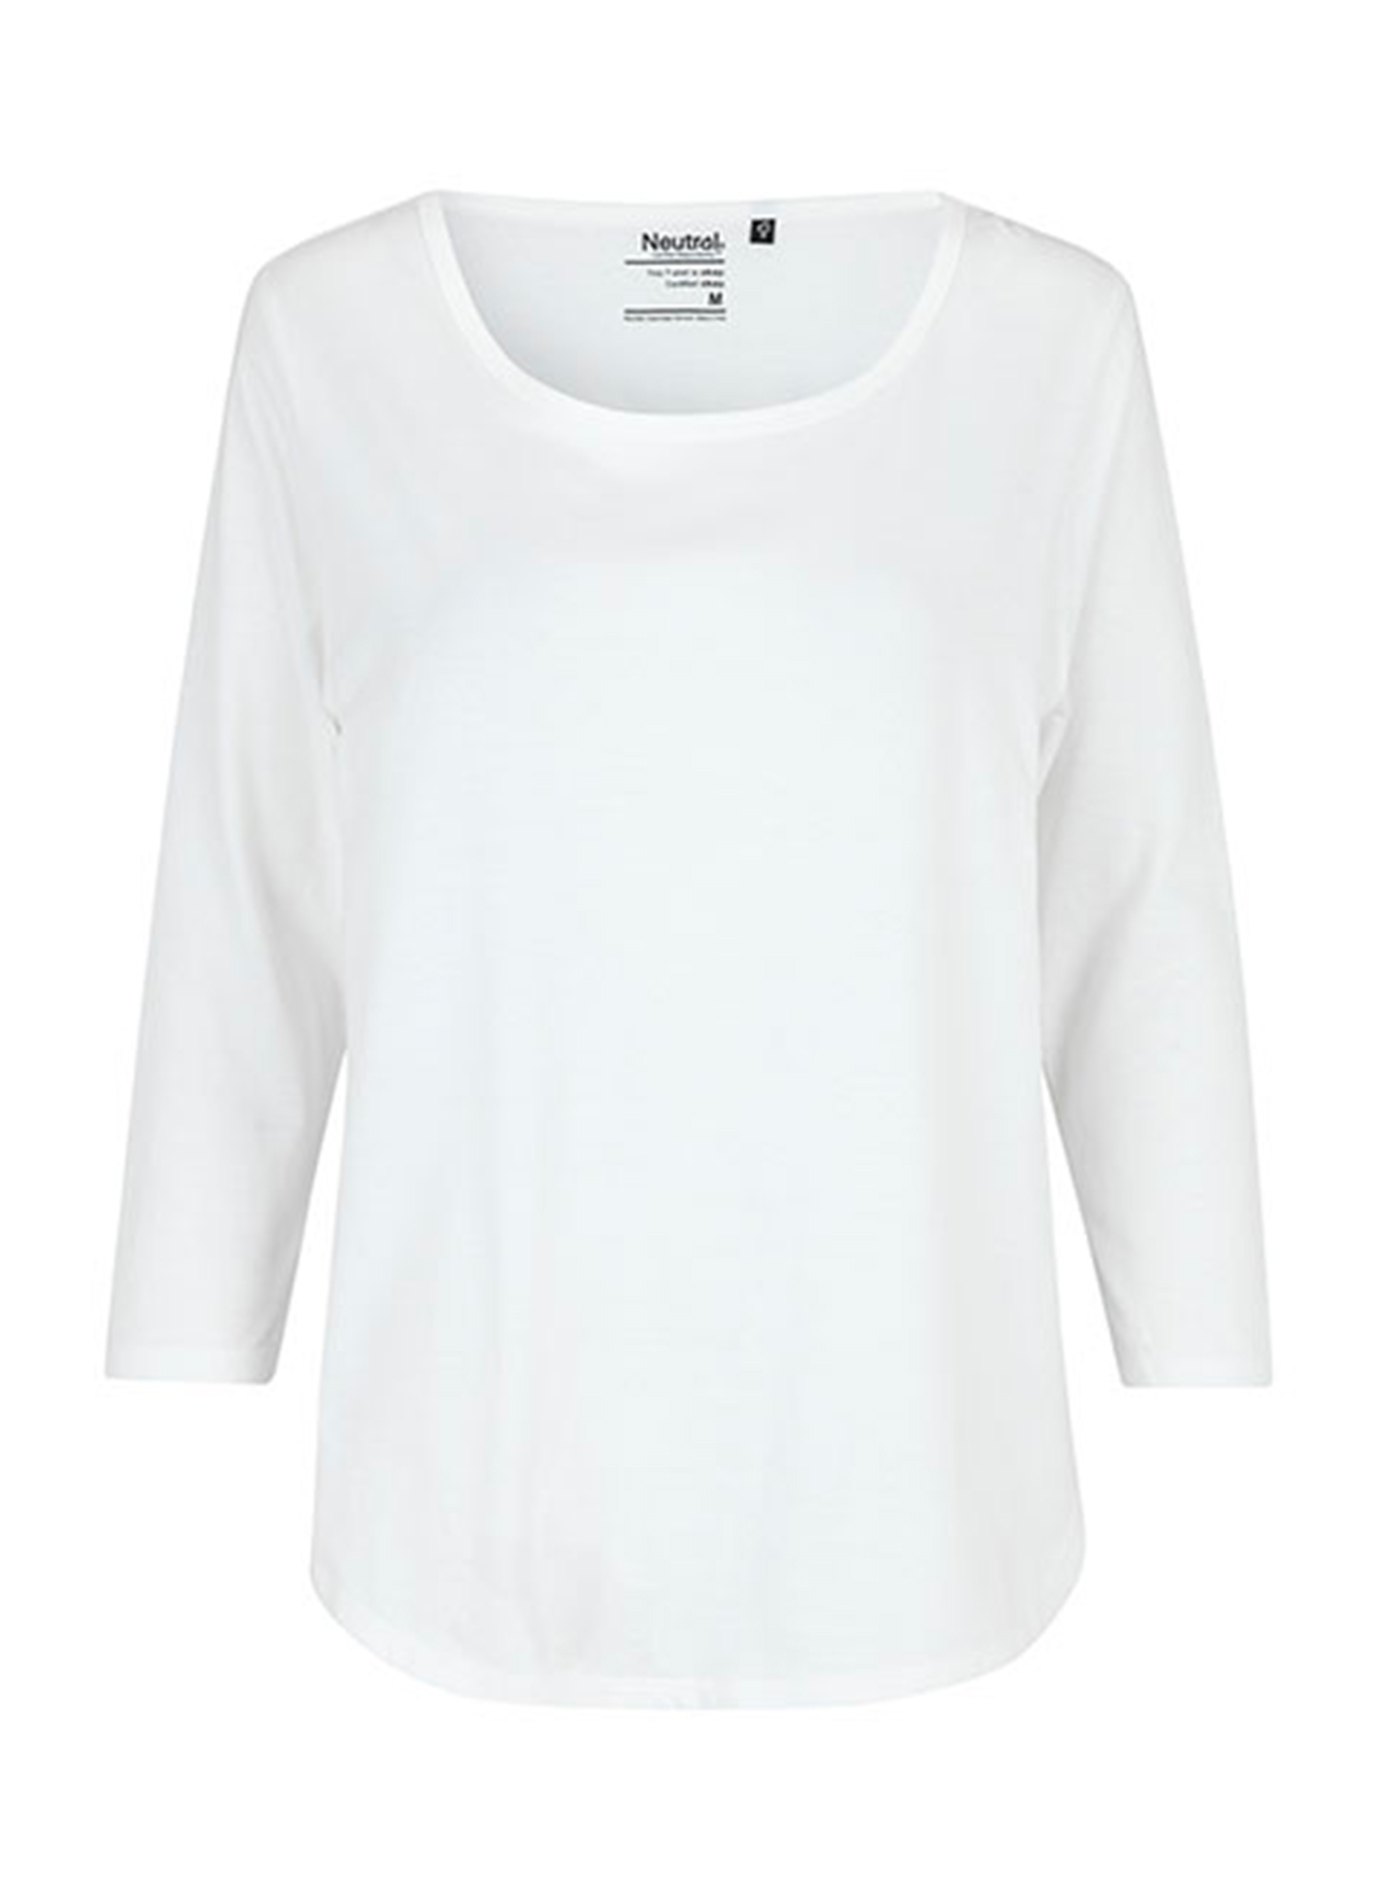 Dámské 3/4 tričko Neutral - Bílá XL